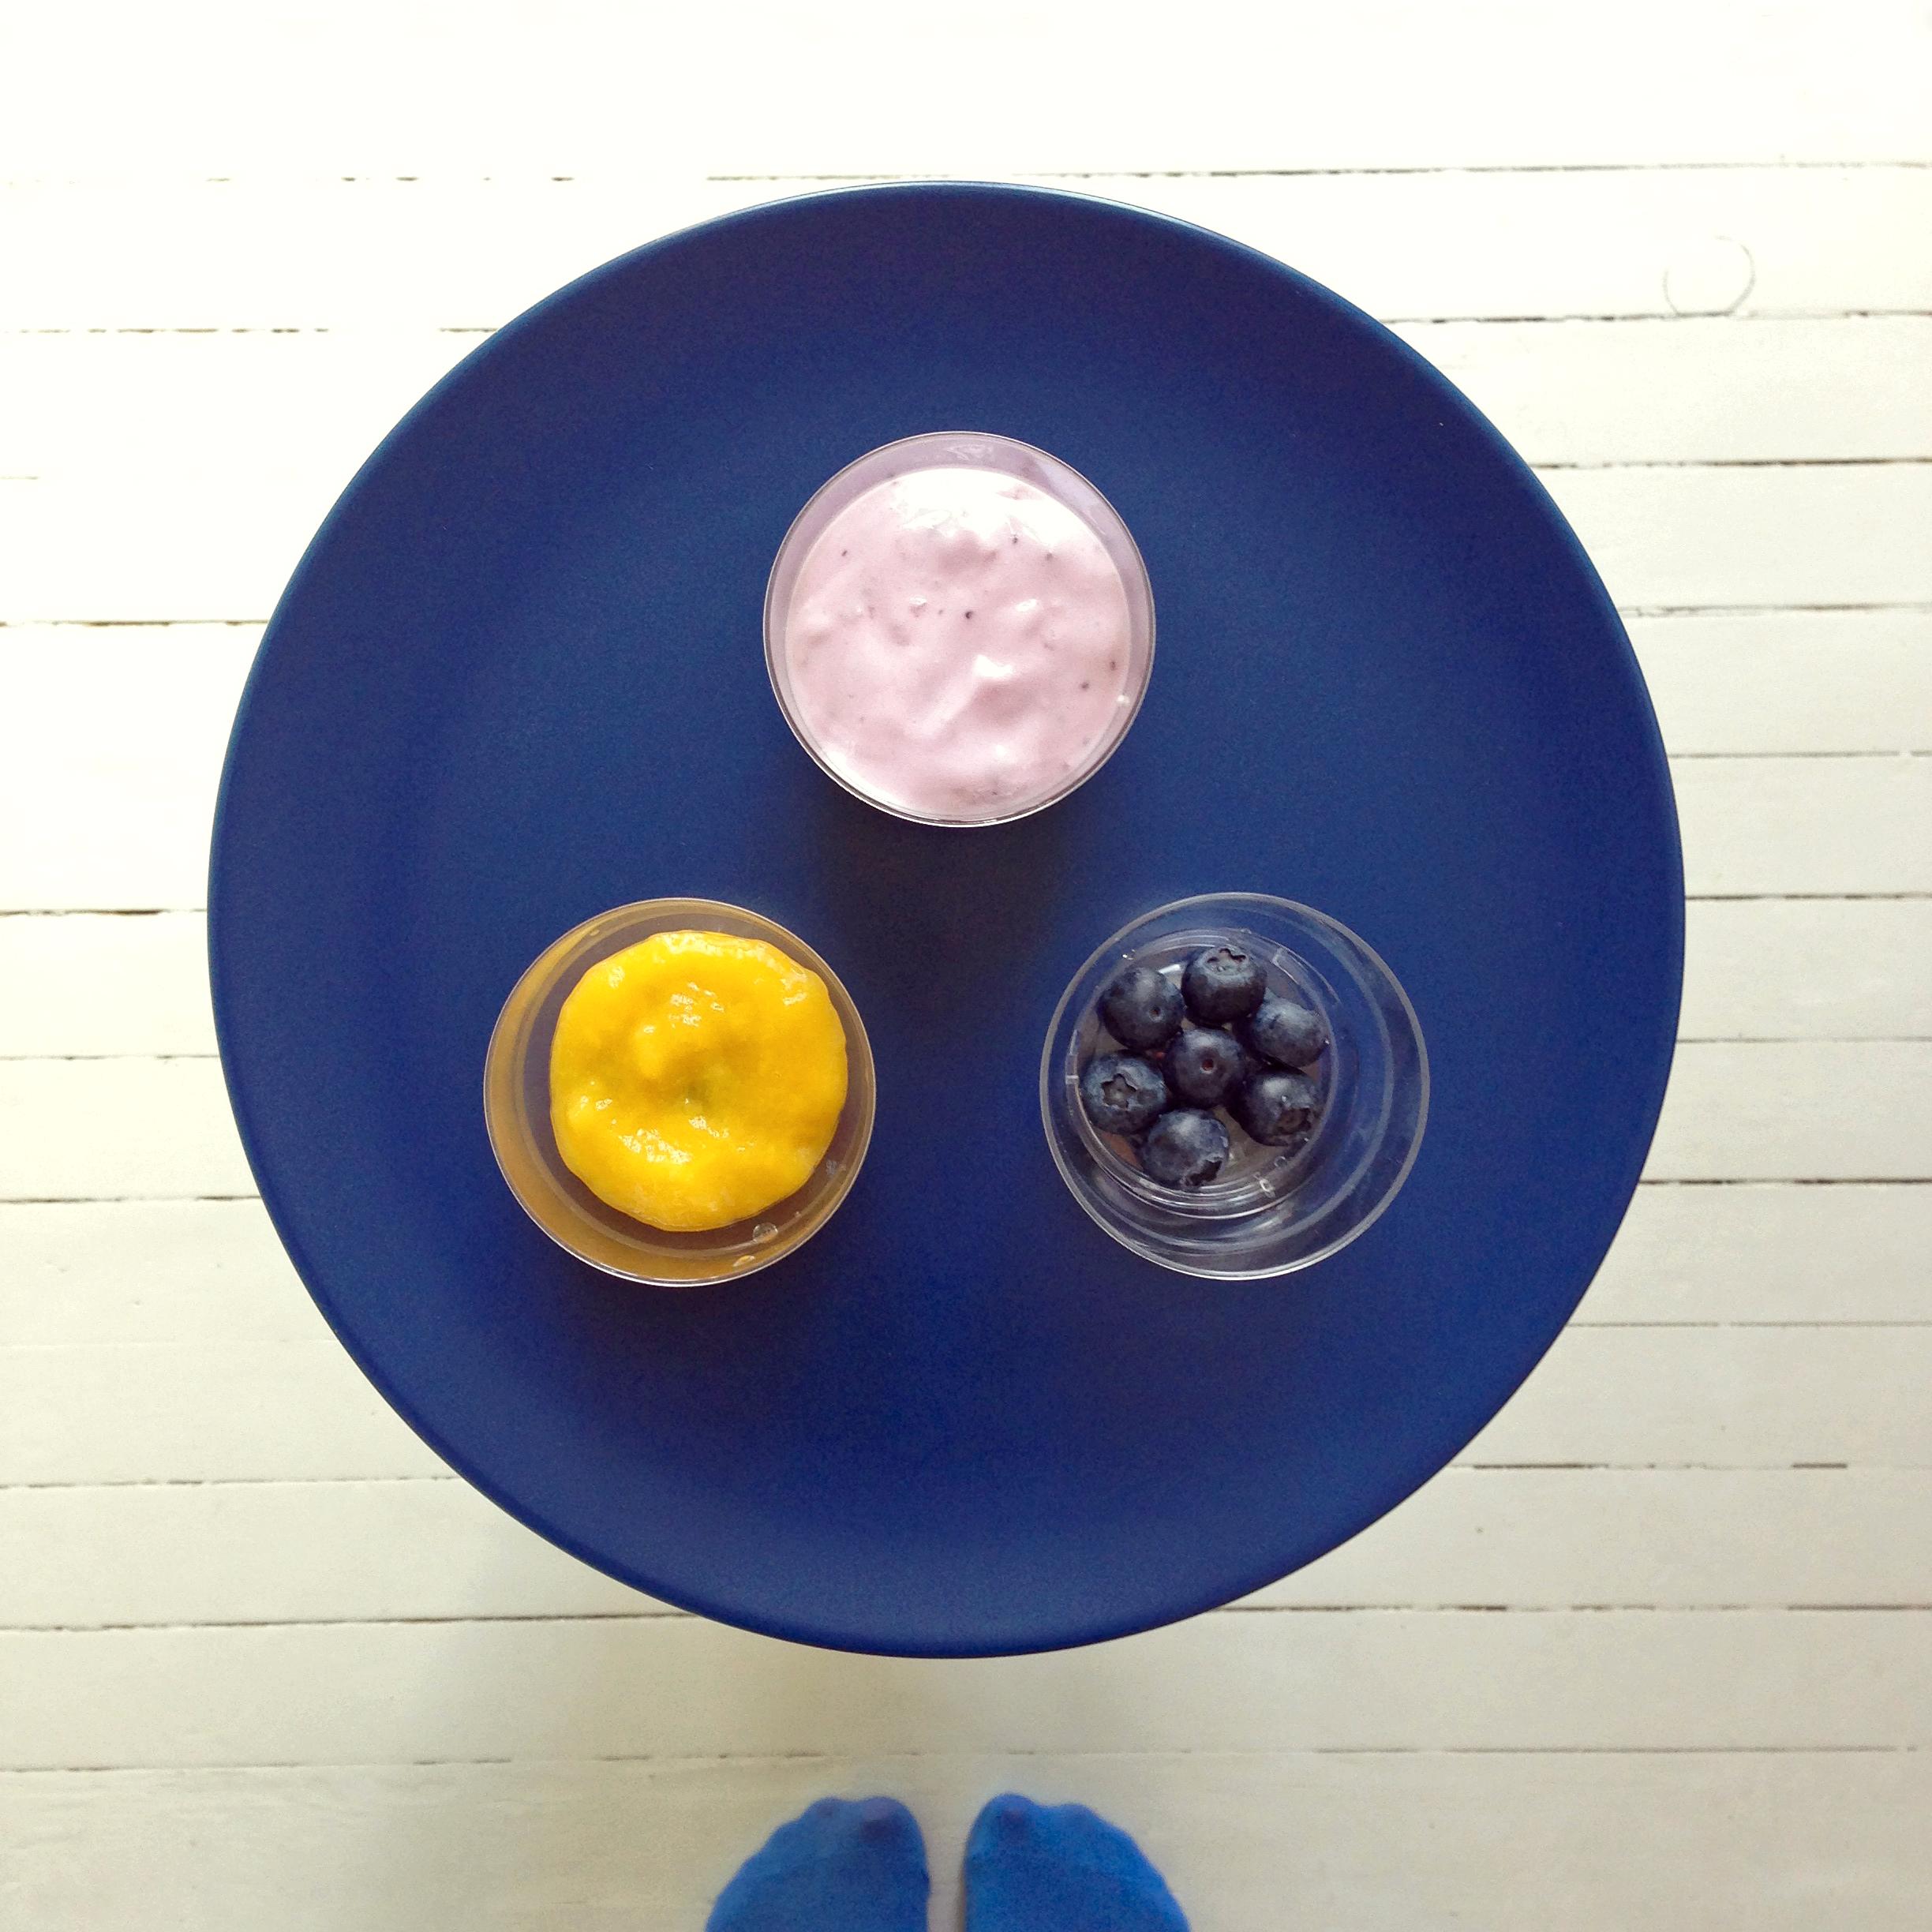 Finn frem små kopper eller skåler. Legg et lag med blåbær nederst, fyll så på med mango og deretter et lag med blåbæryoghurt. Gjenta til koppen er full.